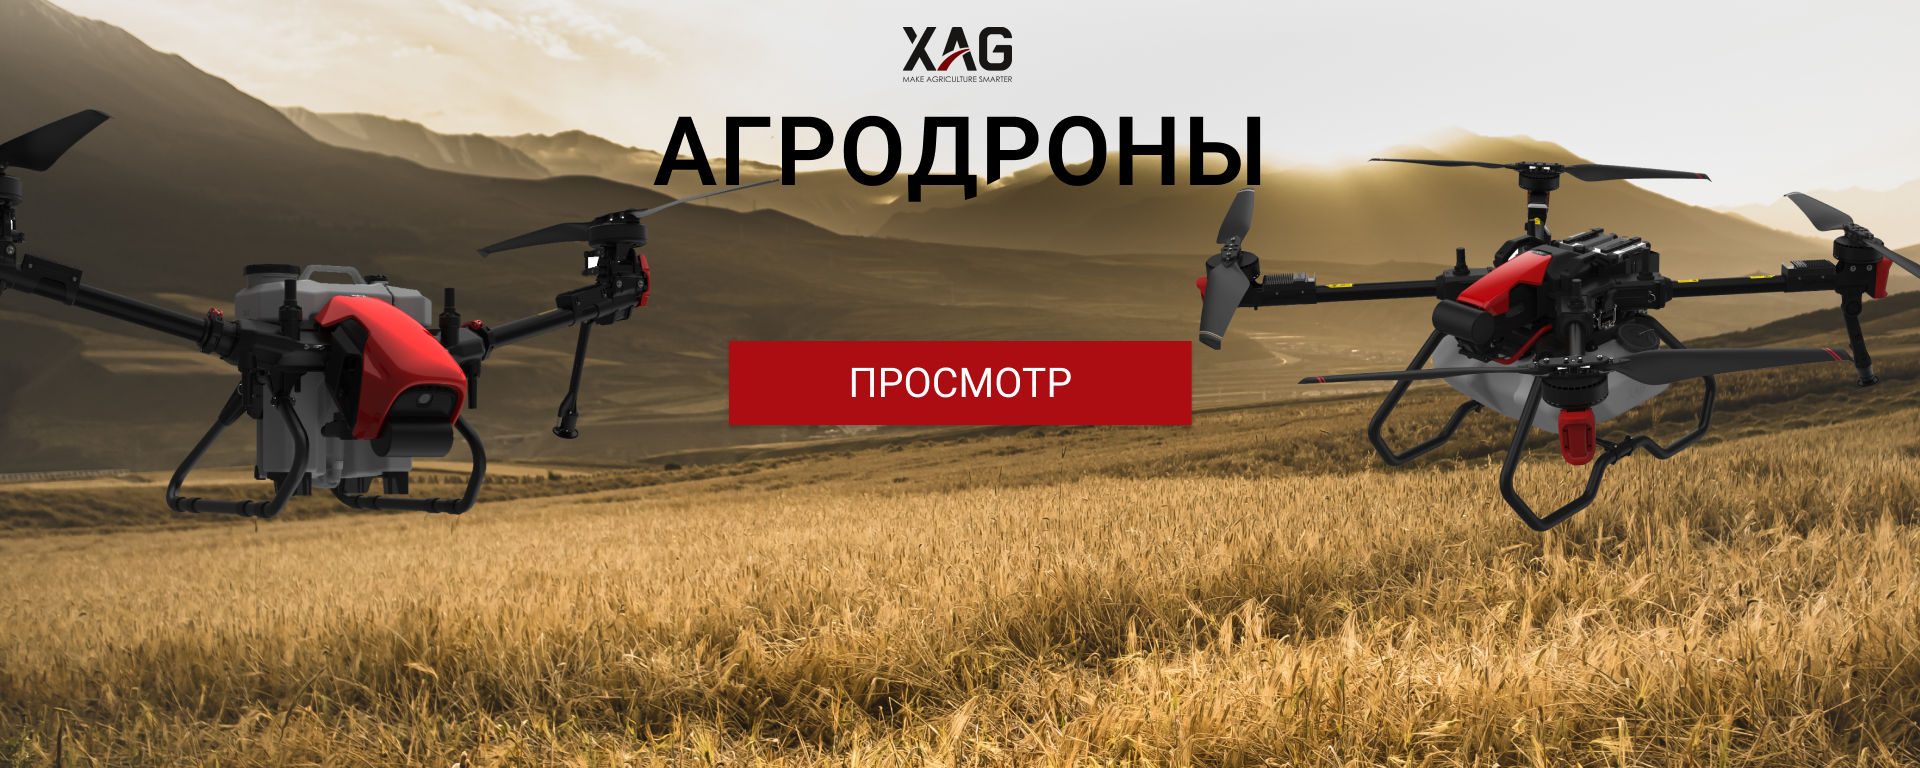 Агродроны XAG дроны-опрыскиватели